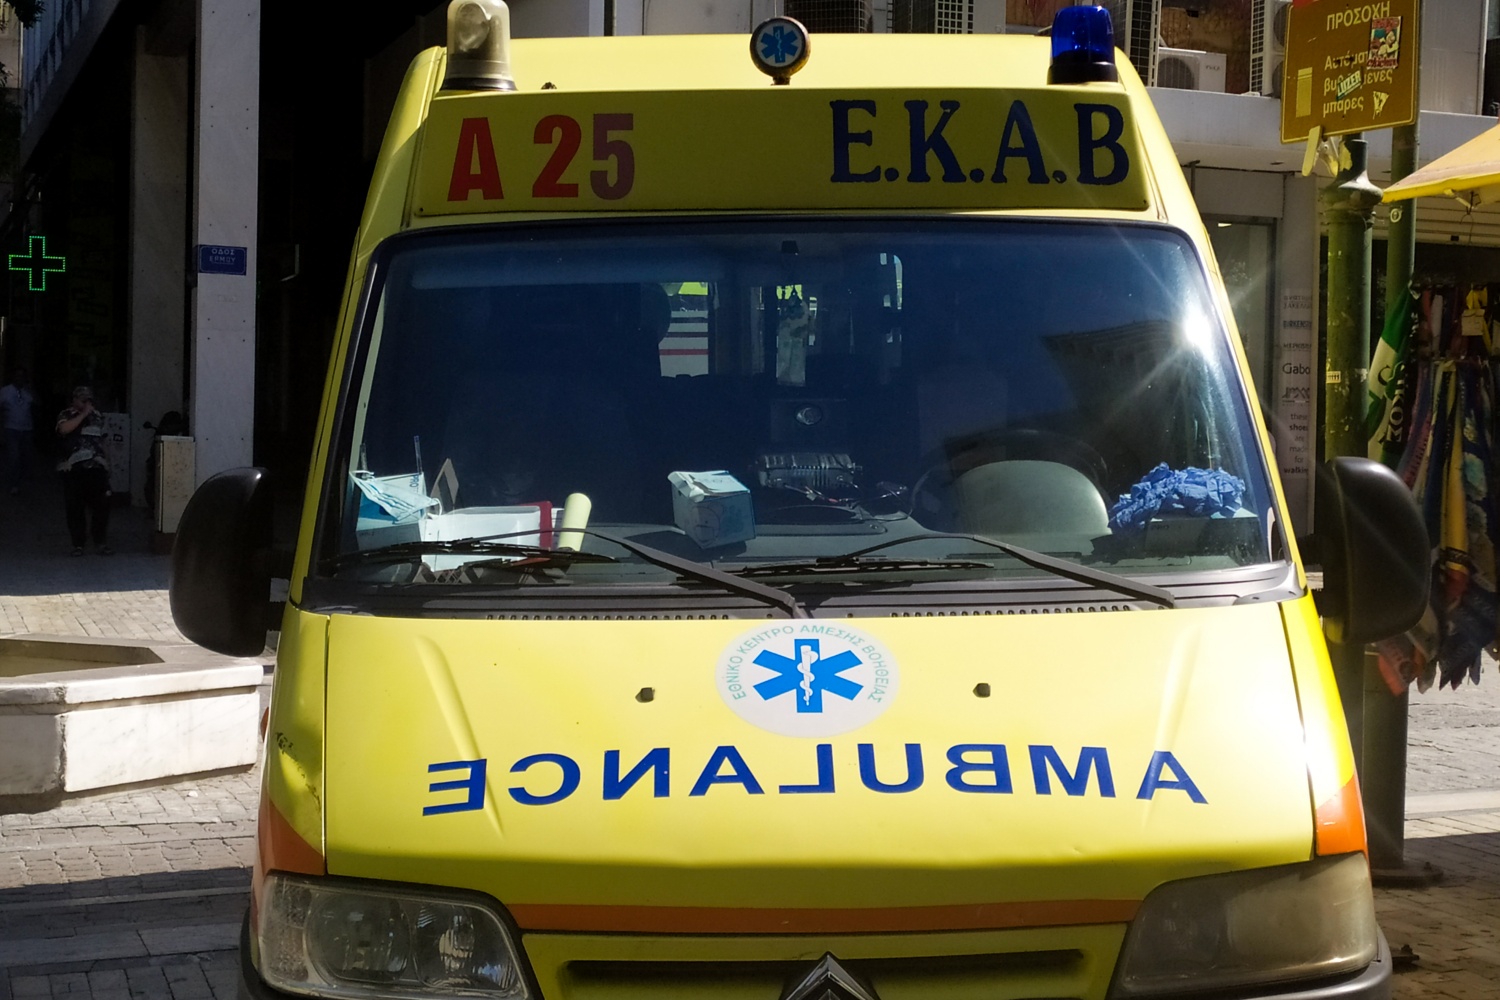 Τροχαίο με λεωφορείο στο κέντρο της Αθήνας- 12 ελαφρά τραυματίες